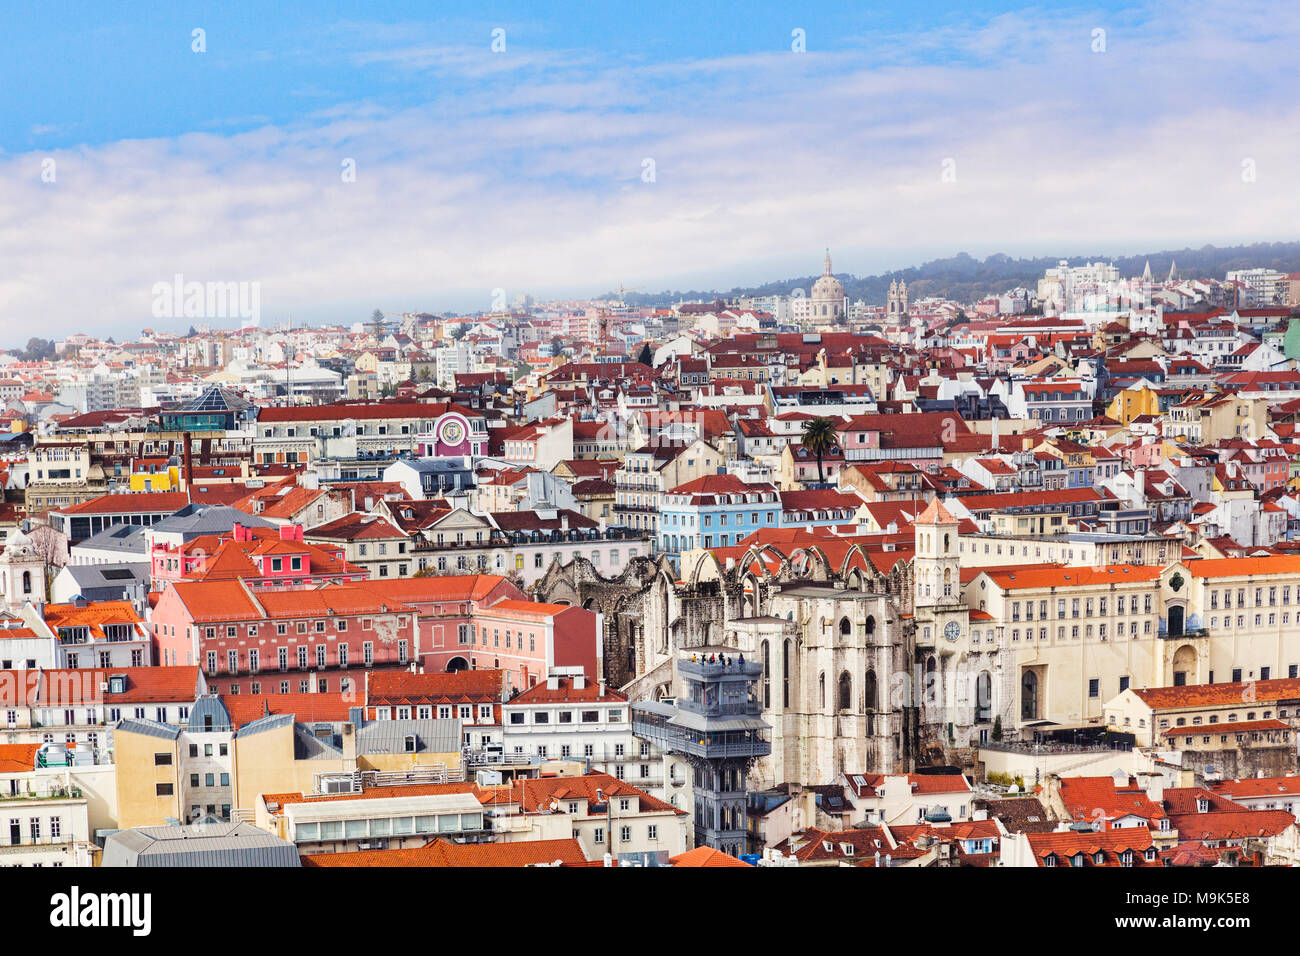 1 mars 2013 : Lisbonne, Portugal - une vue sur la ville depuis le château mauresque, avec l'ascenseur de Santa Justa au milieu. Banque D'Images